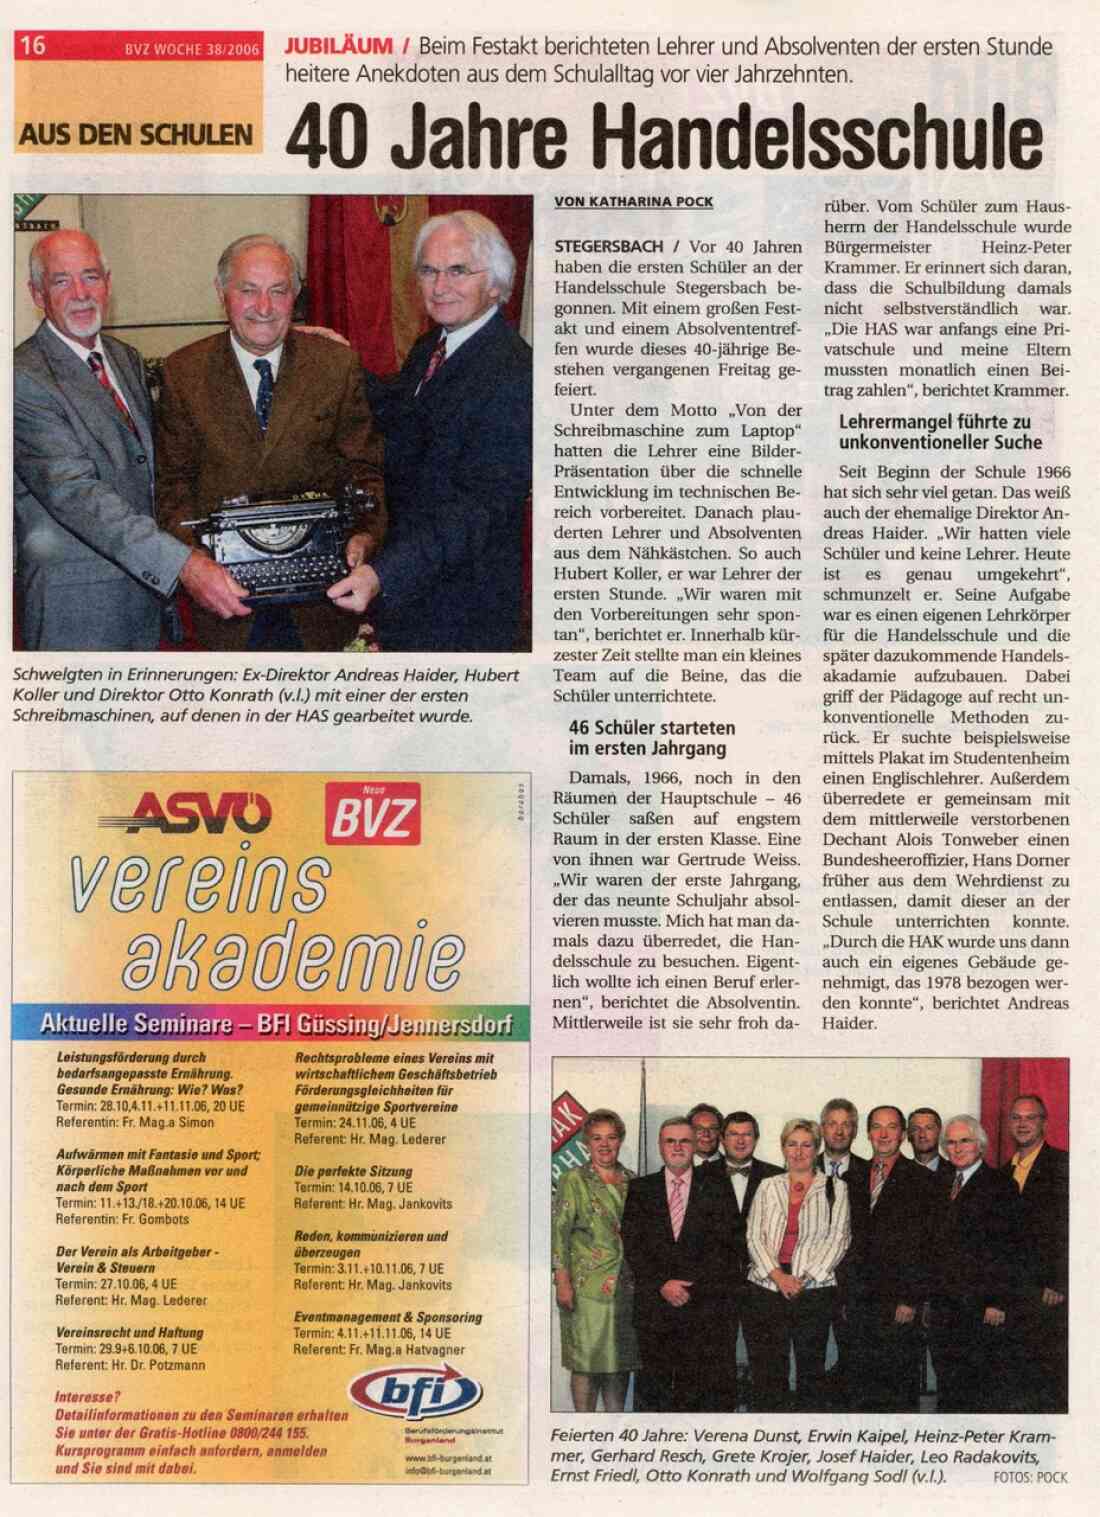 Zeitungsartikel der BVZ, 25 Jahre Handelsschule Stegersbach vom 20. September 2006